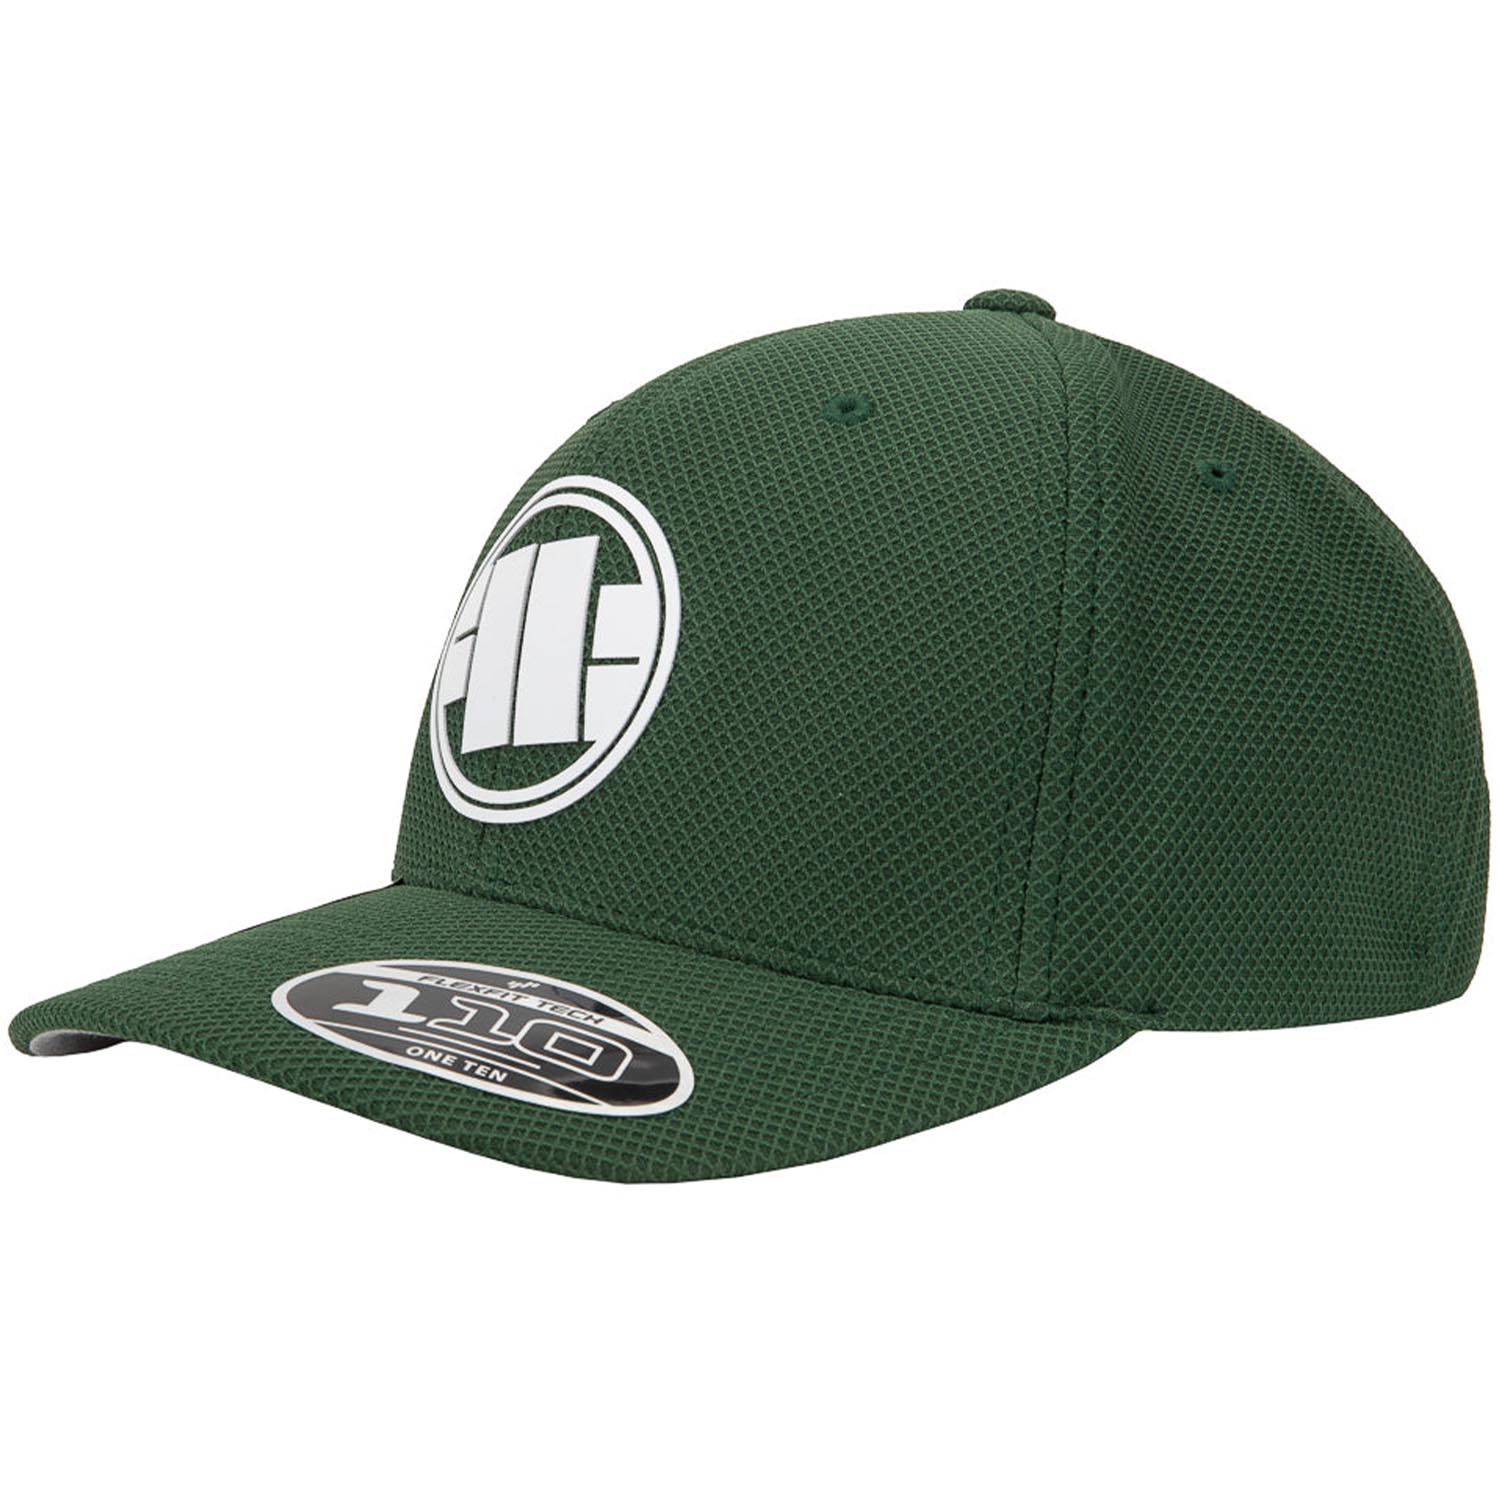 Pit Bull West Coast Snapback Cap, Logo Hybrid, grün